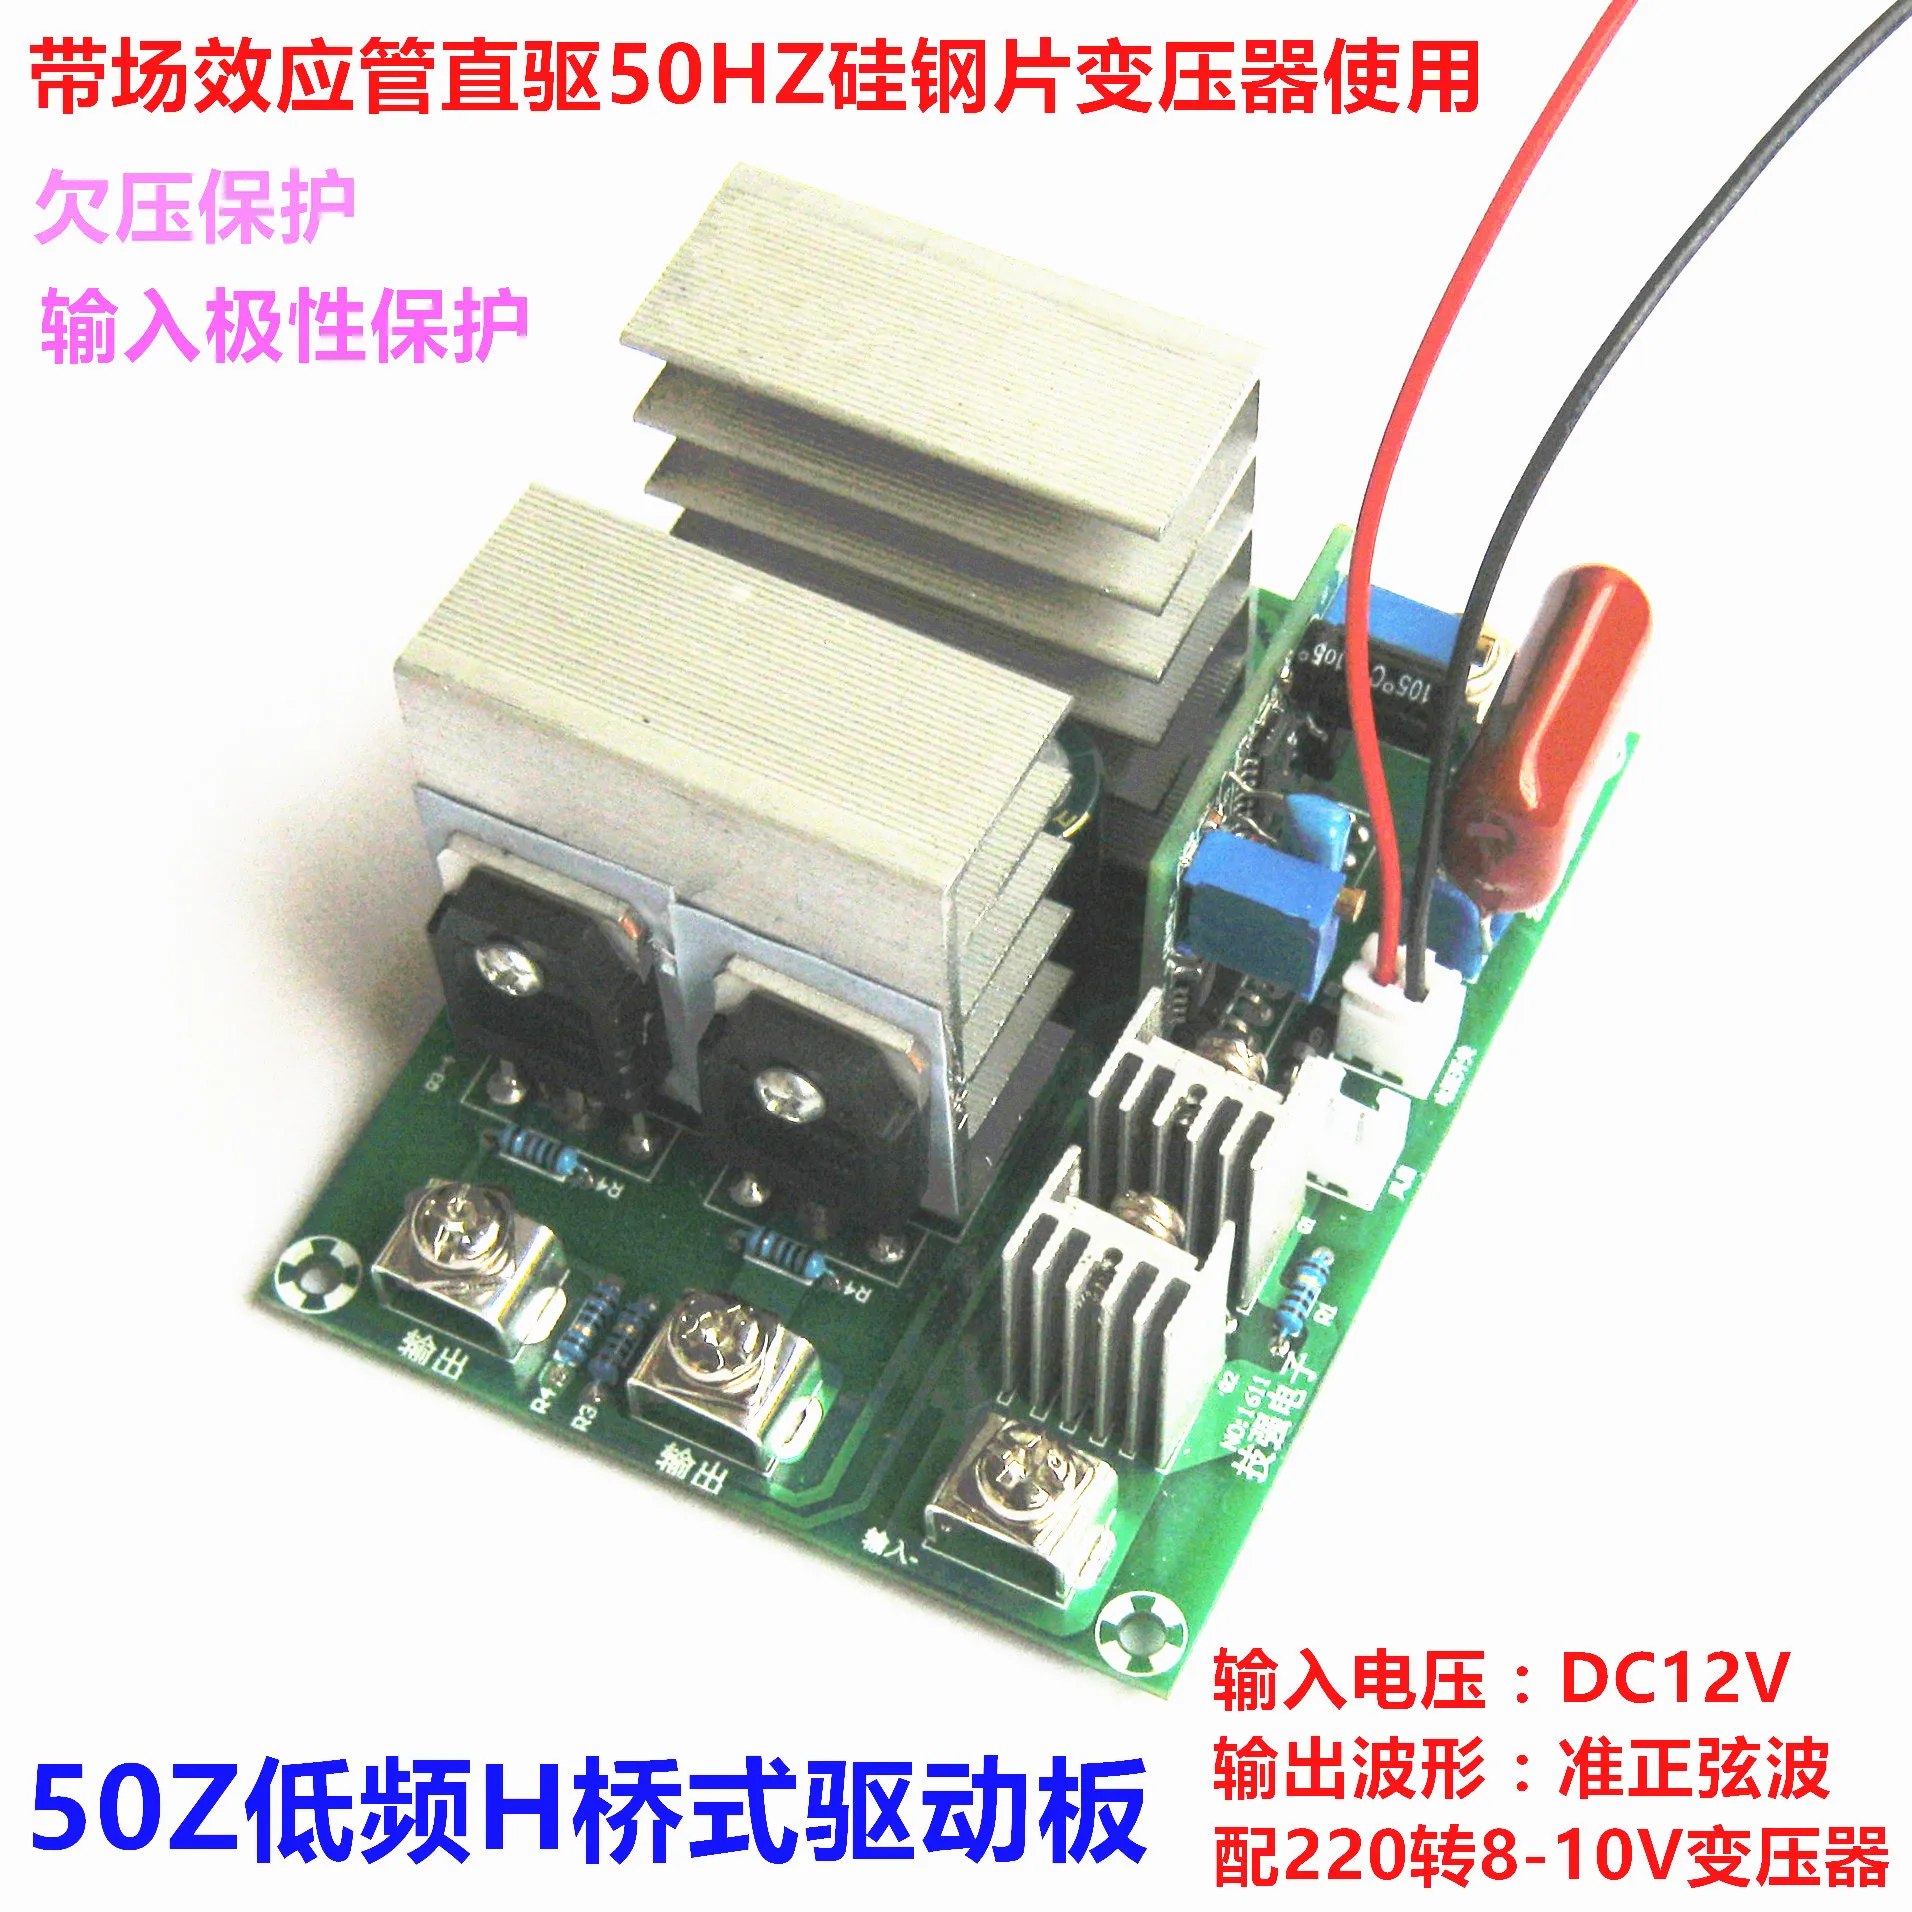 transformador-de-impulso-unico-de-12v-220v-con-placa-de-accionamiento-inversor-de-50hz-tipo-puente-de-500w-con-onda-cuasi-sinusoidal-estabilizada